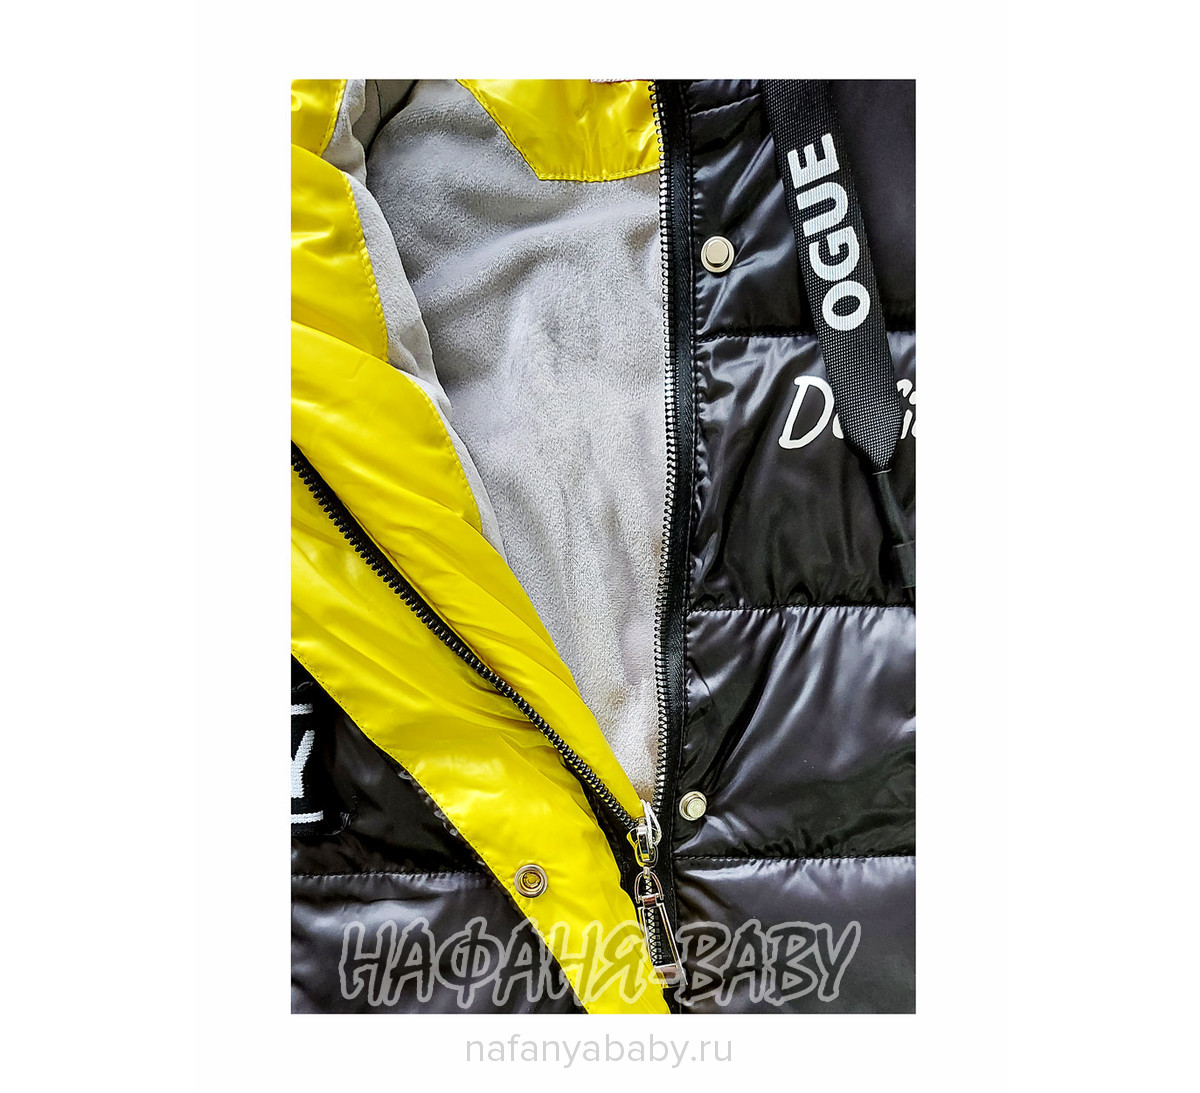 Зимнее пальто на биопухе DELFIN-FREE, купить в интернет магазине Нафаня. арт: 2216.